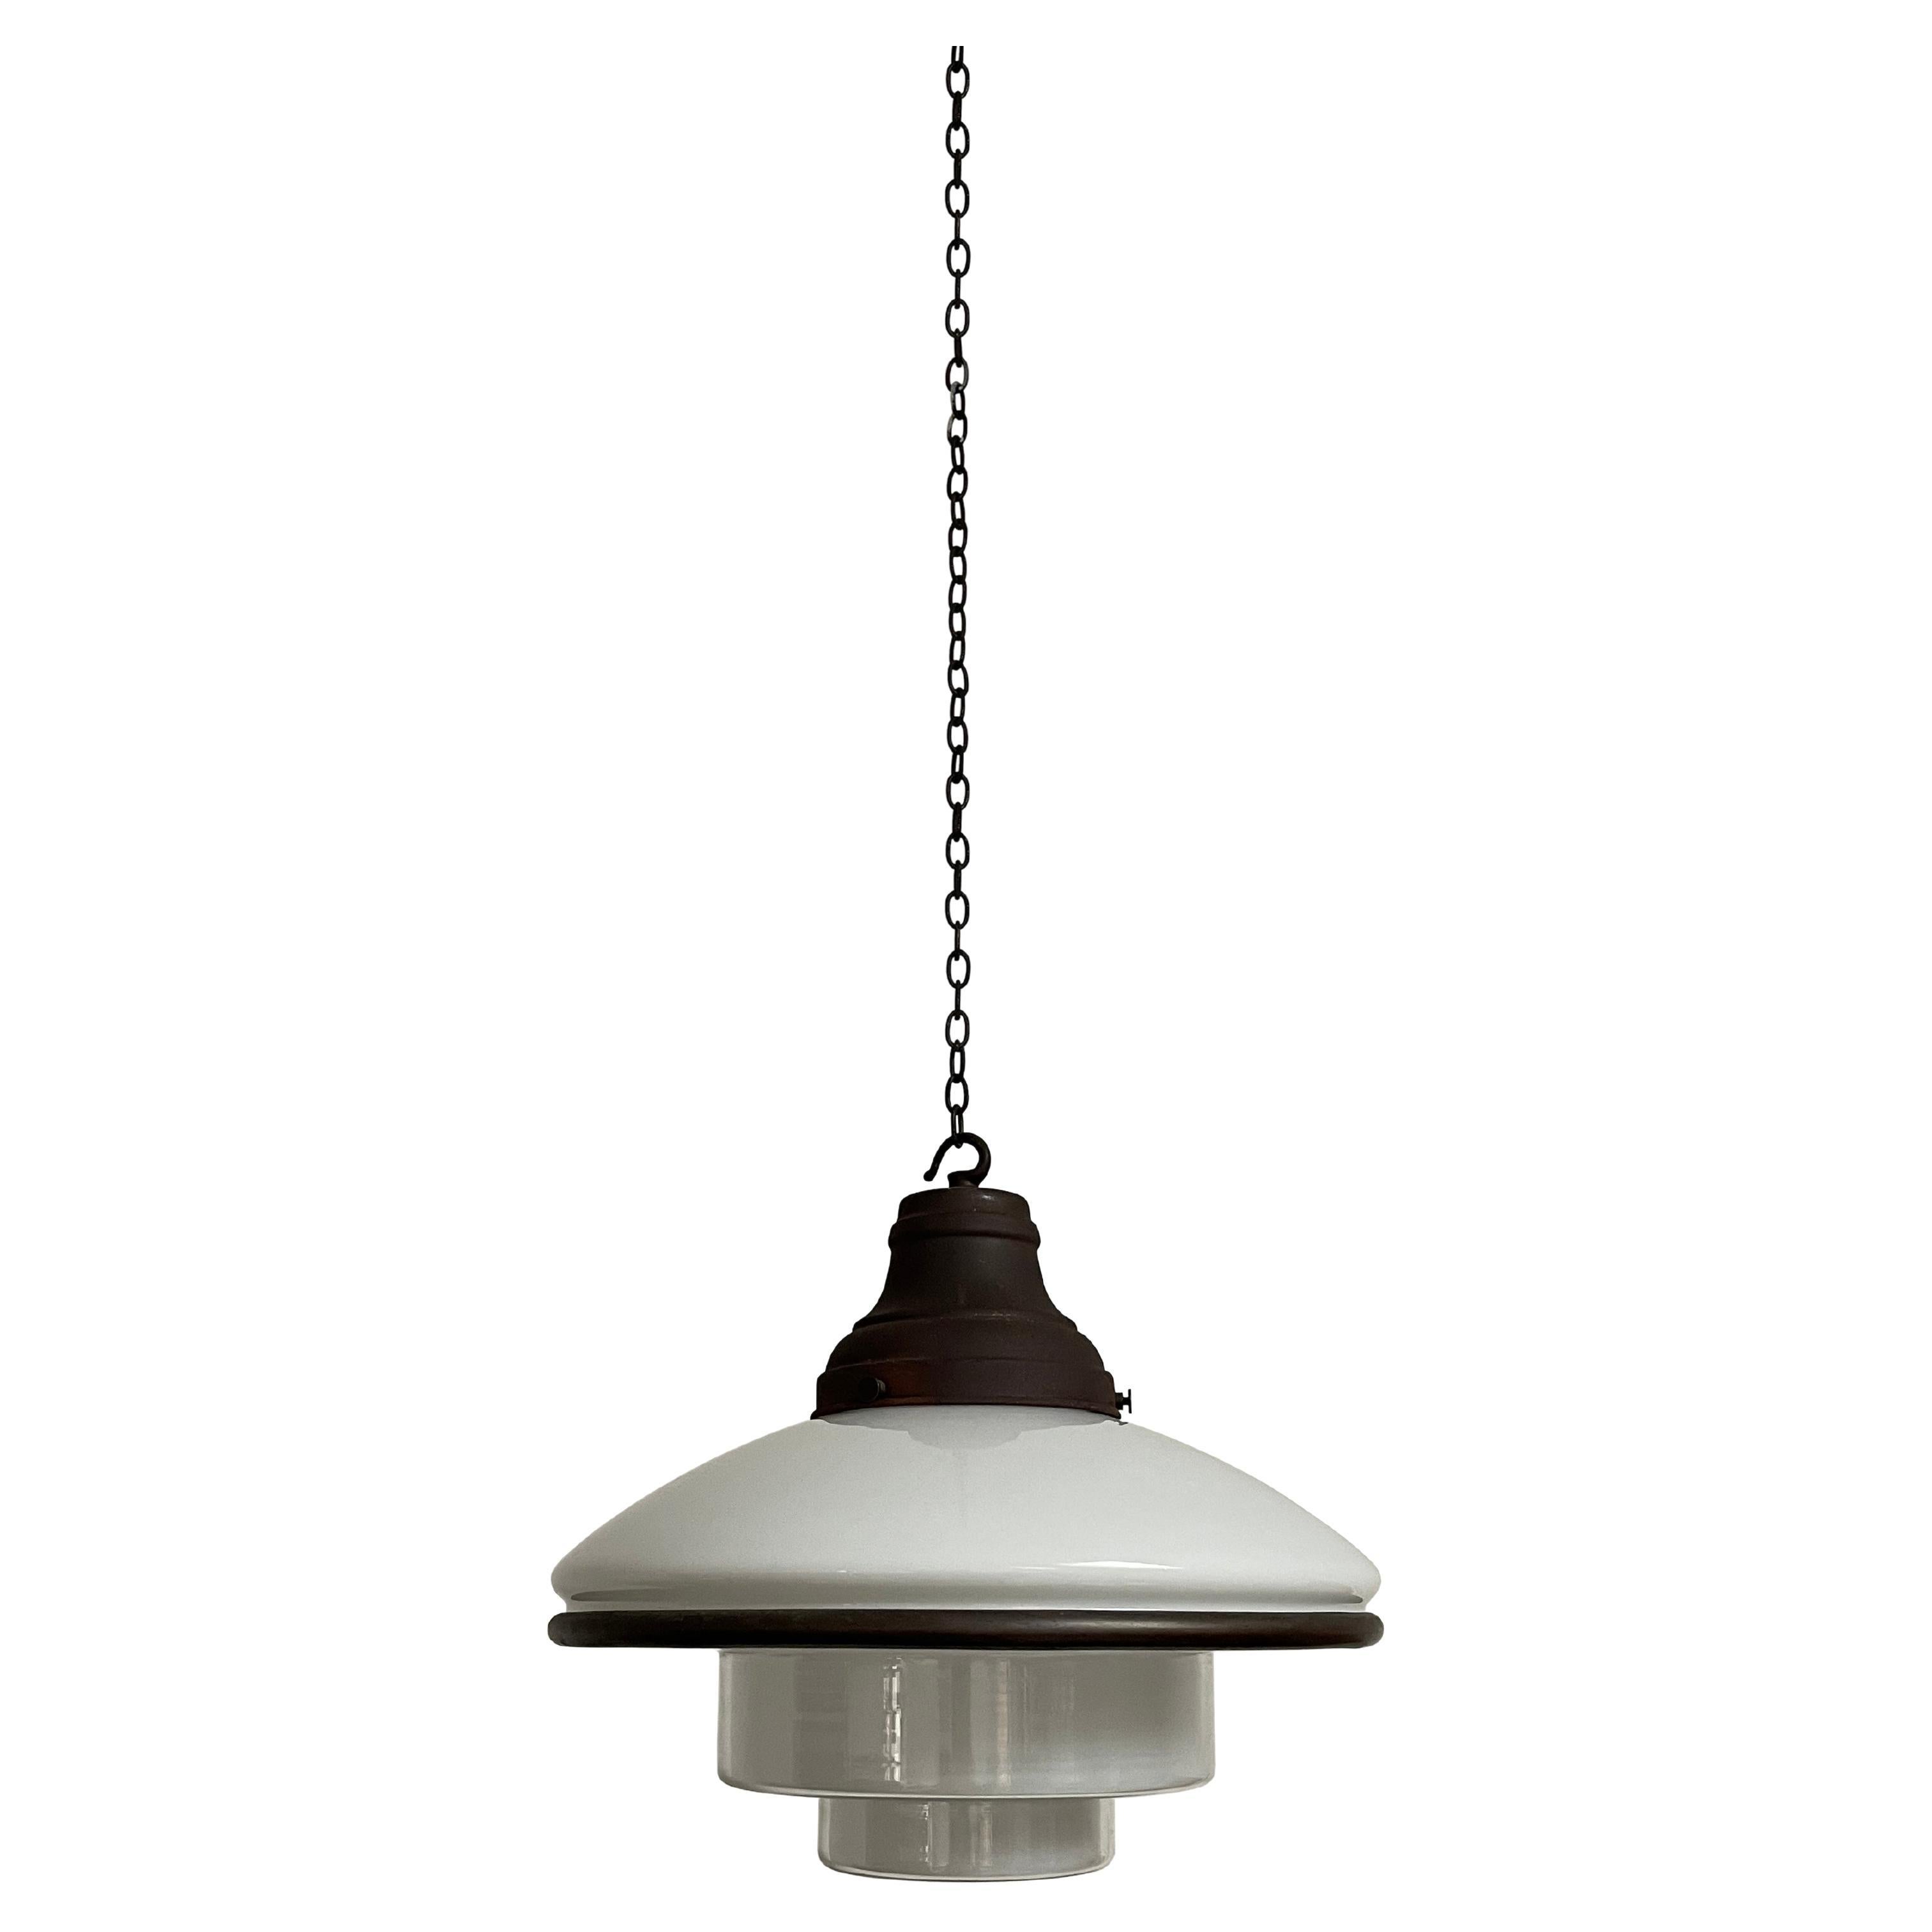 Antica lampada a sospensione da soffitto Bauhaus Sistrah in vetro lattiginoso opalino di Otto Muller